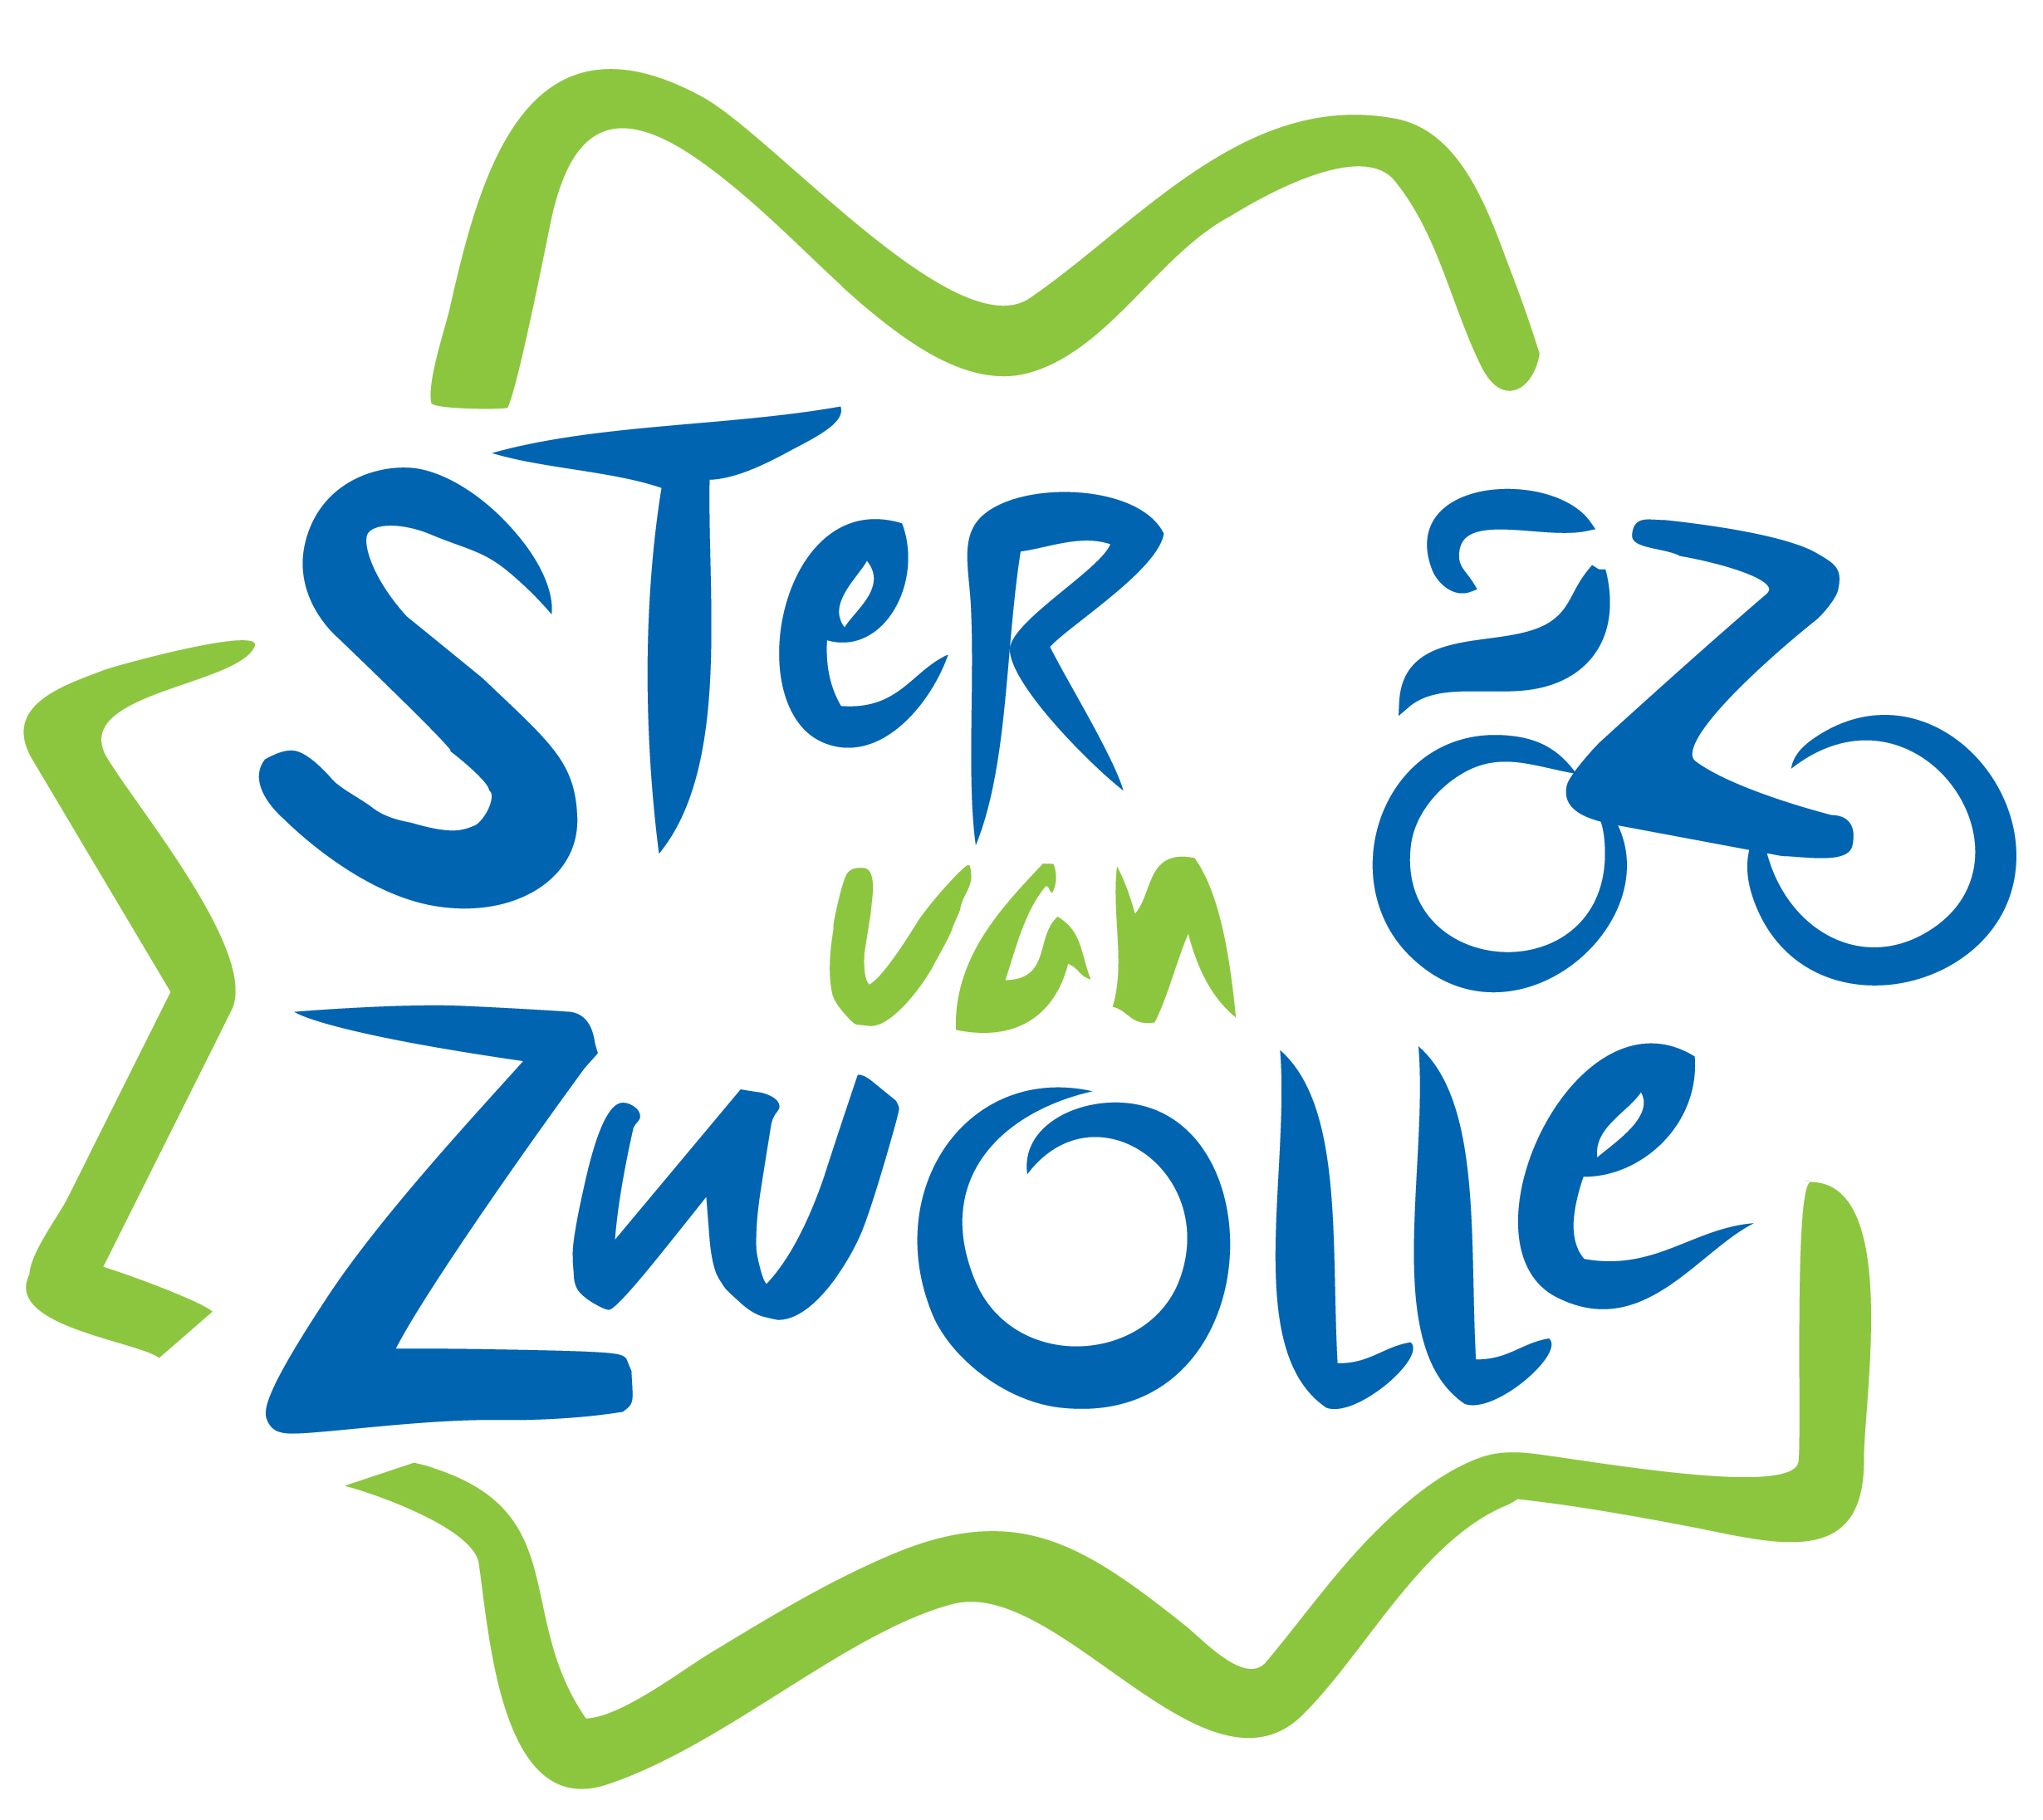 Acht Friezen op deelnemerslijst Craft Ster van Zwolle